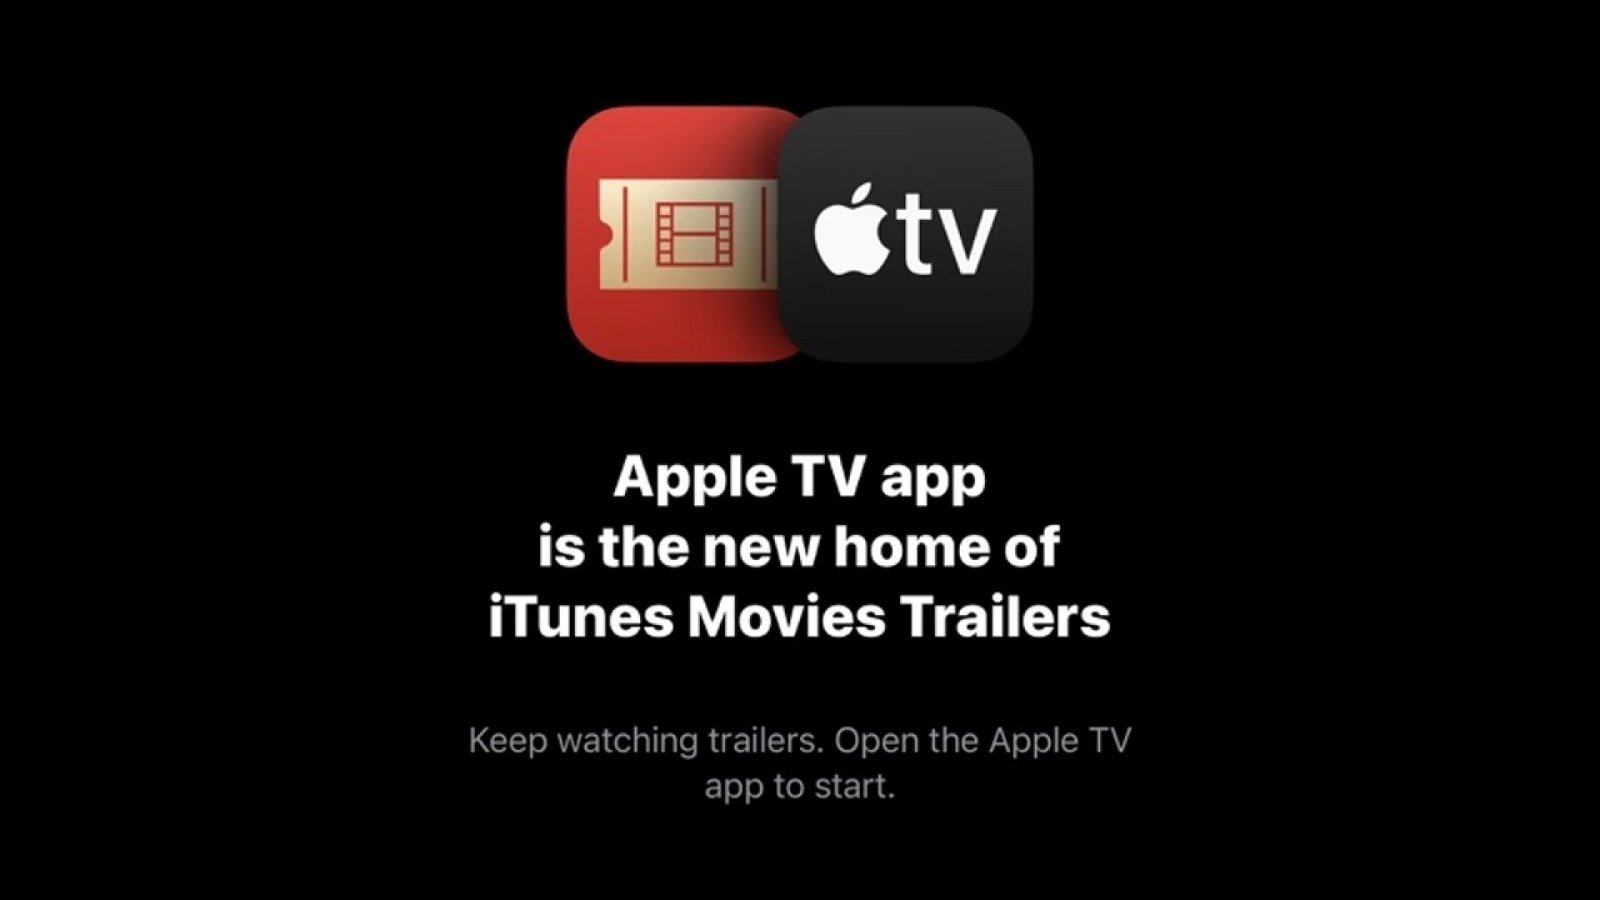 Iconos de iTunes Movie Trailers y Apple TV